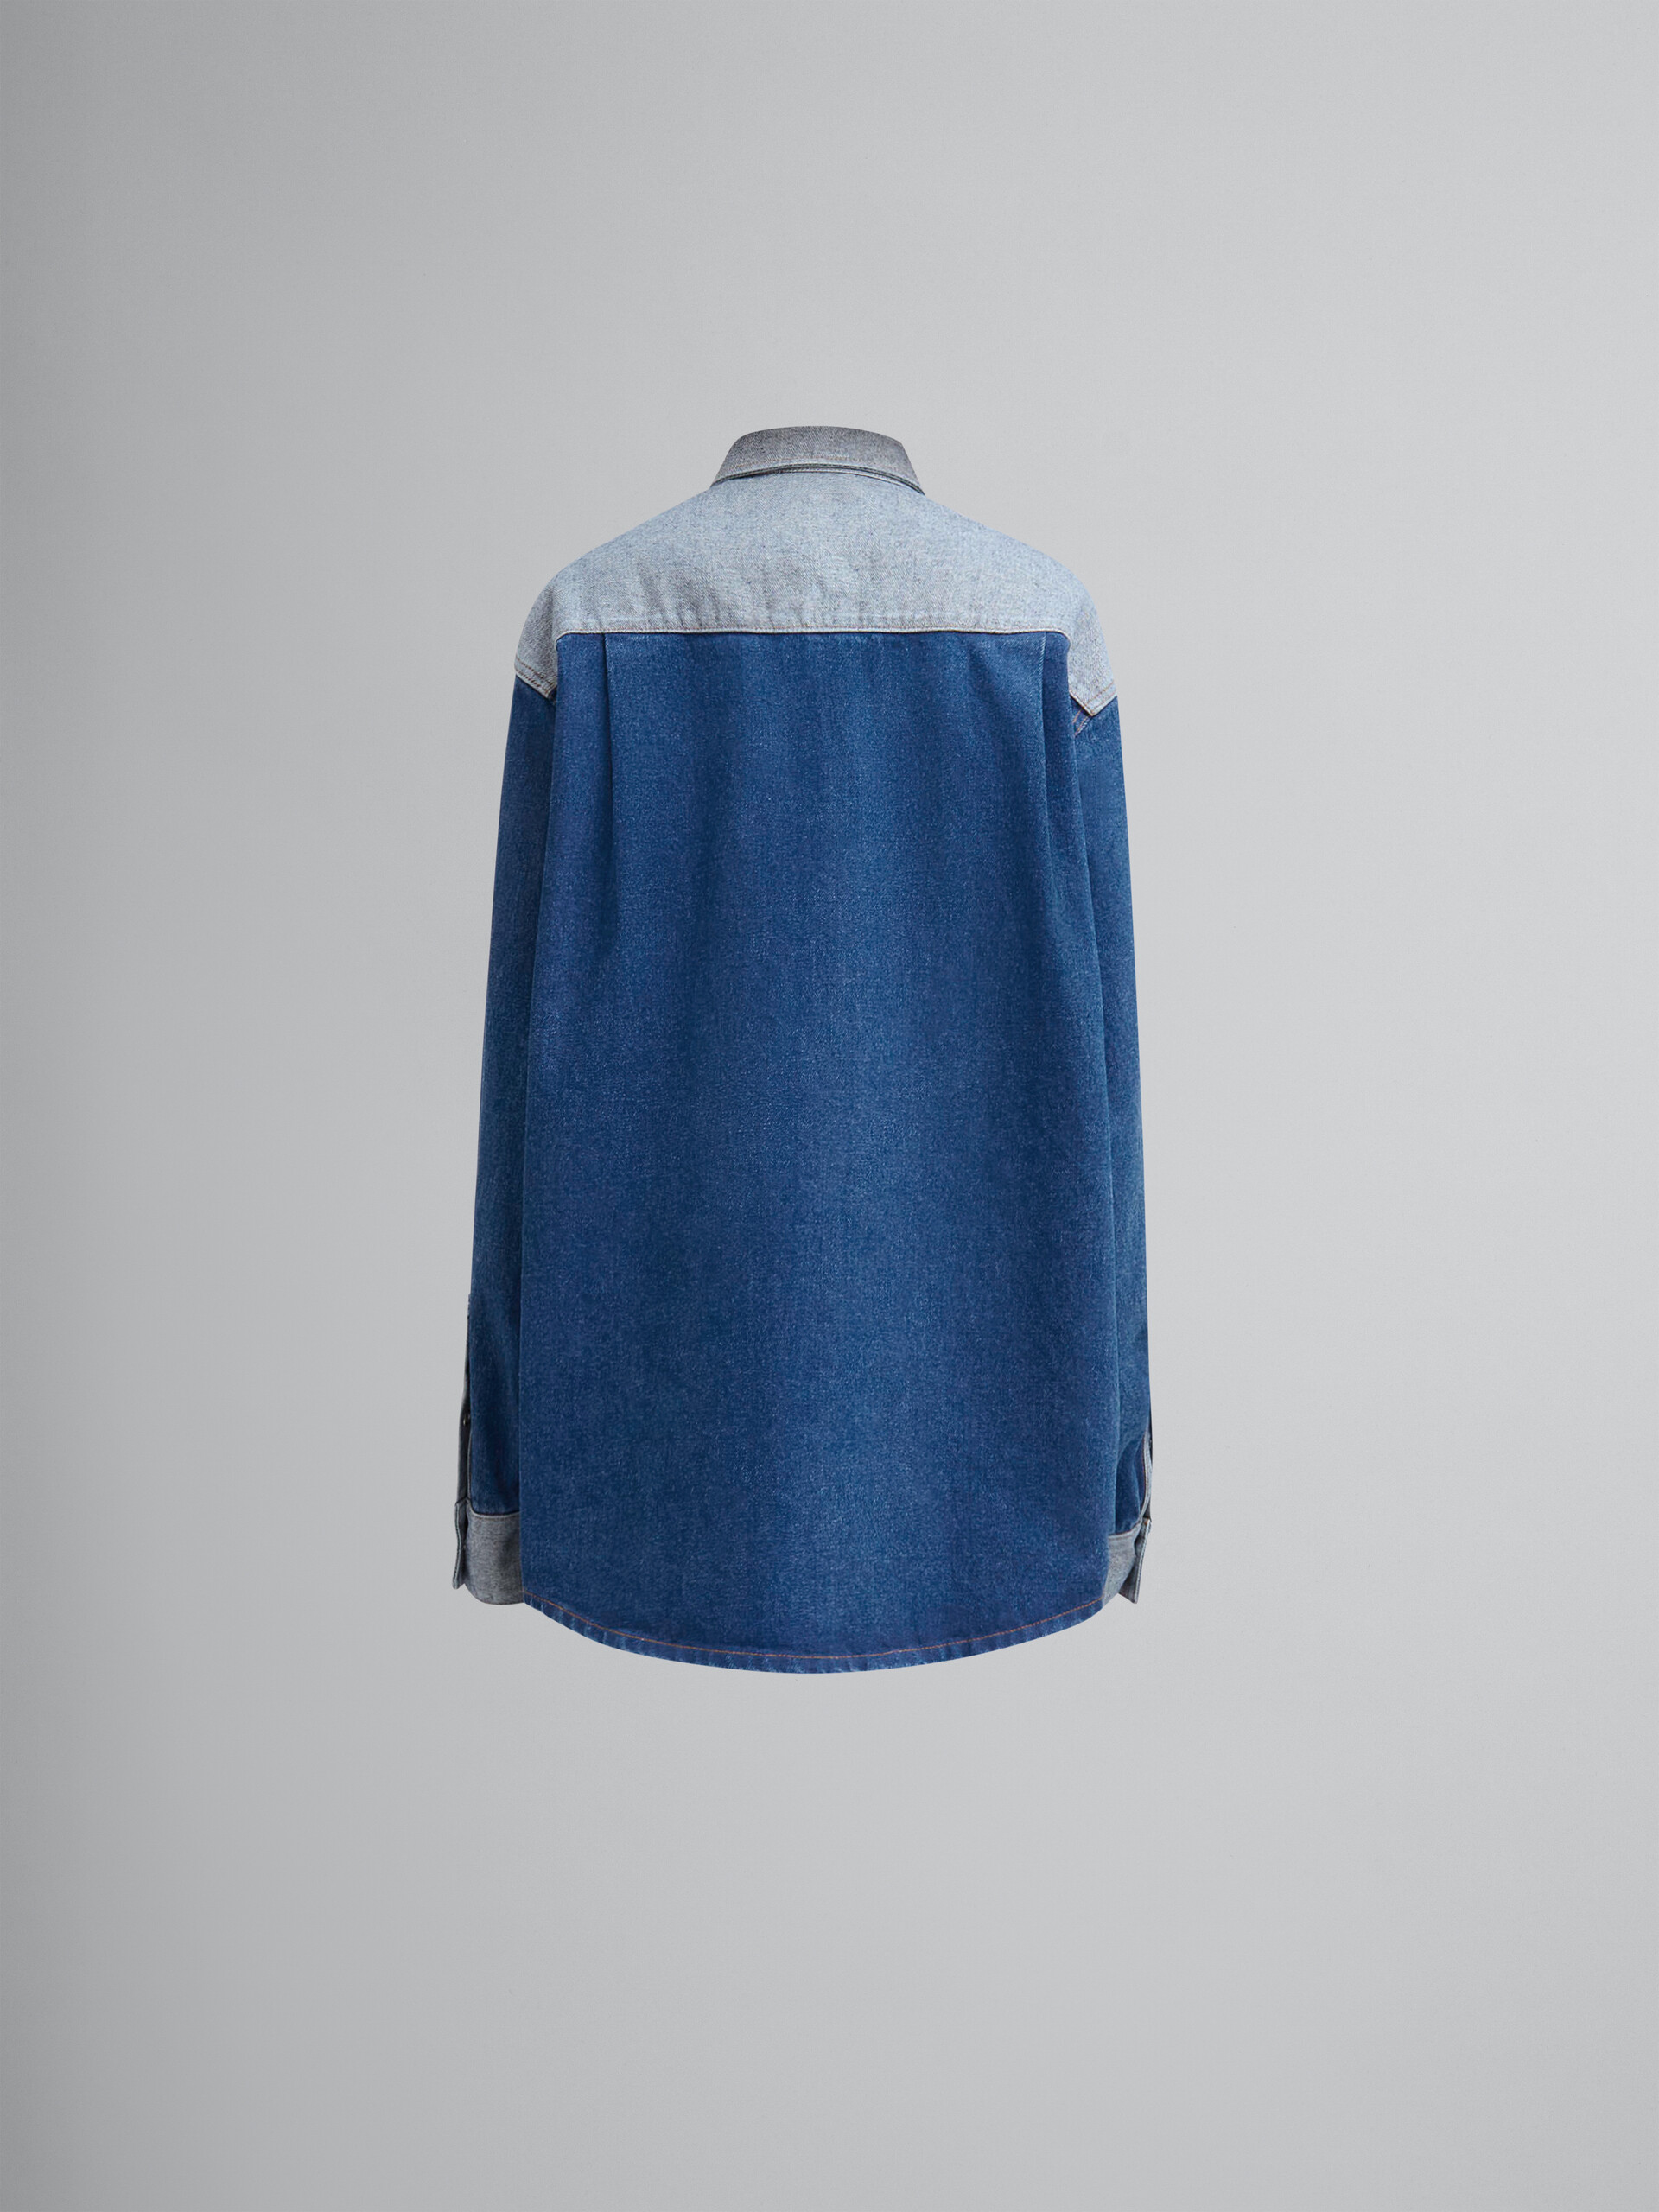 Chemise en denim bleu bicolore avec bords francs - Chemises - Image 2